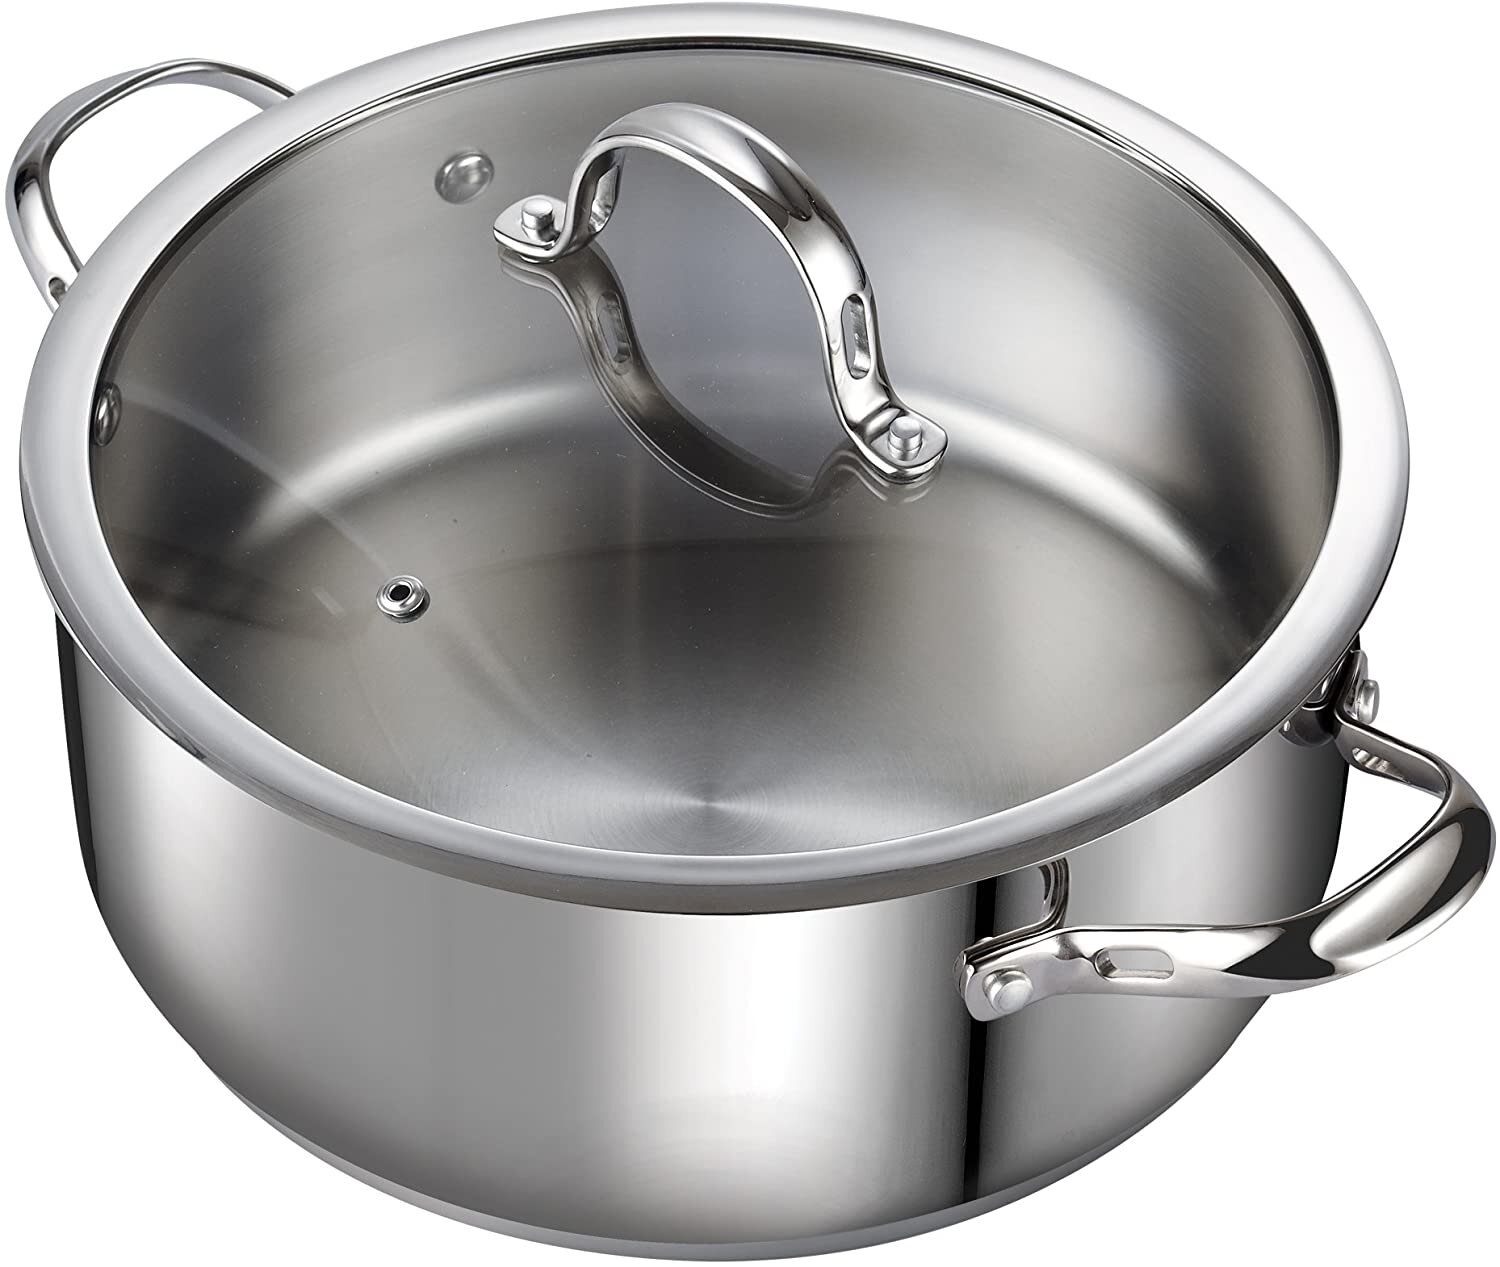 https://assets.wfcdn.com/im/89439911/compr-r85/1656/165638695/cooks-standard-dutch-oven-casserole-classic-stainless-steel-stockpot.jpg